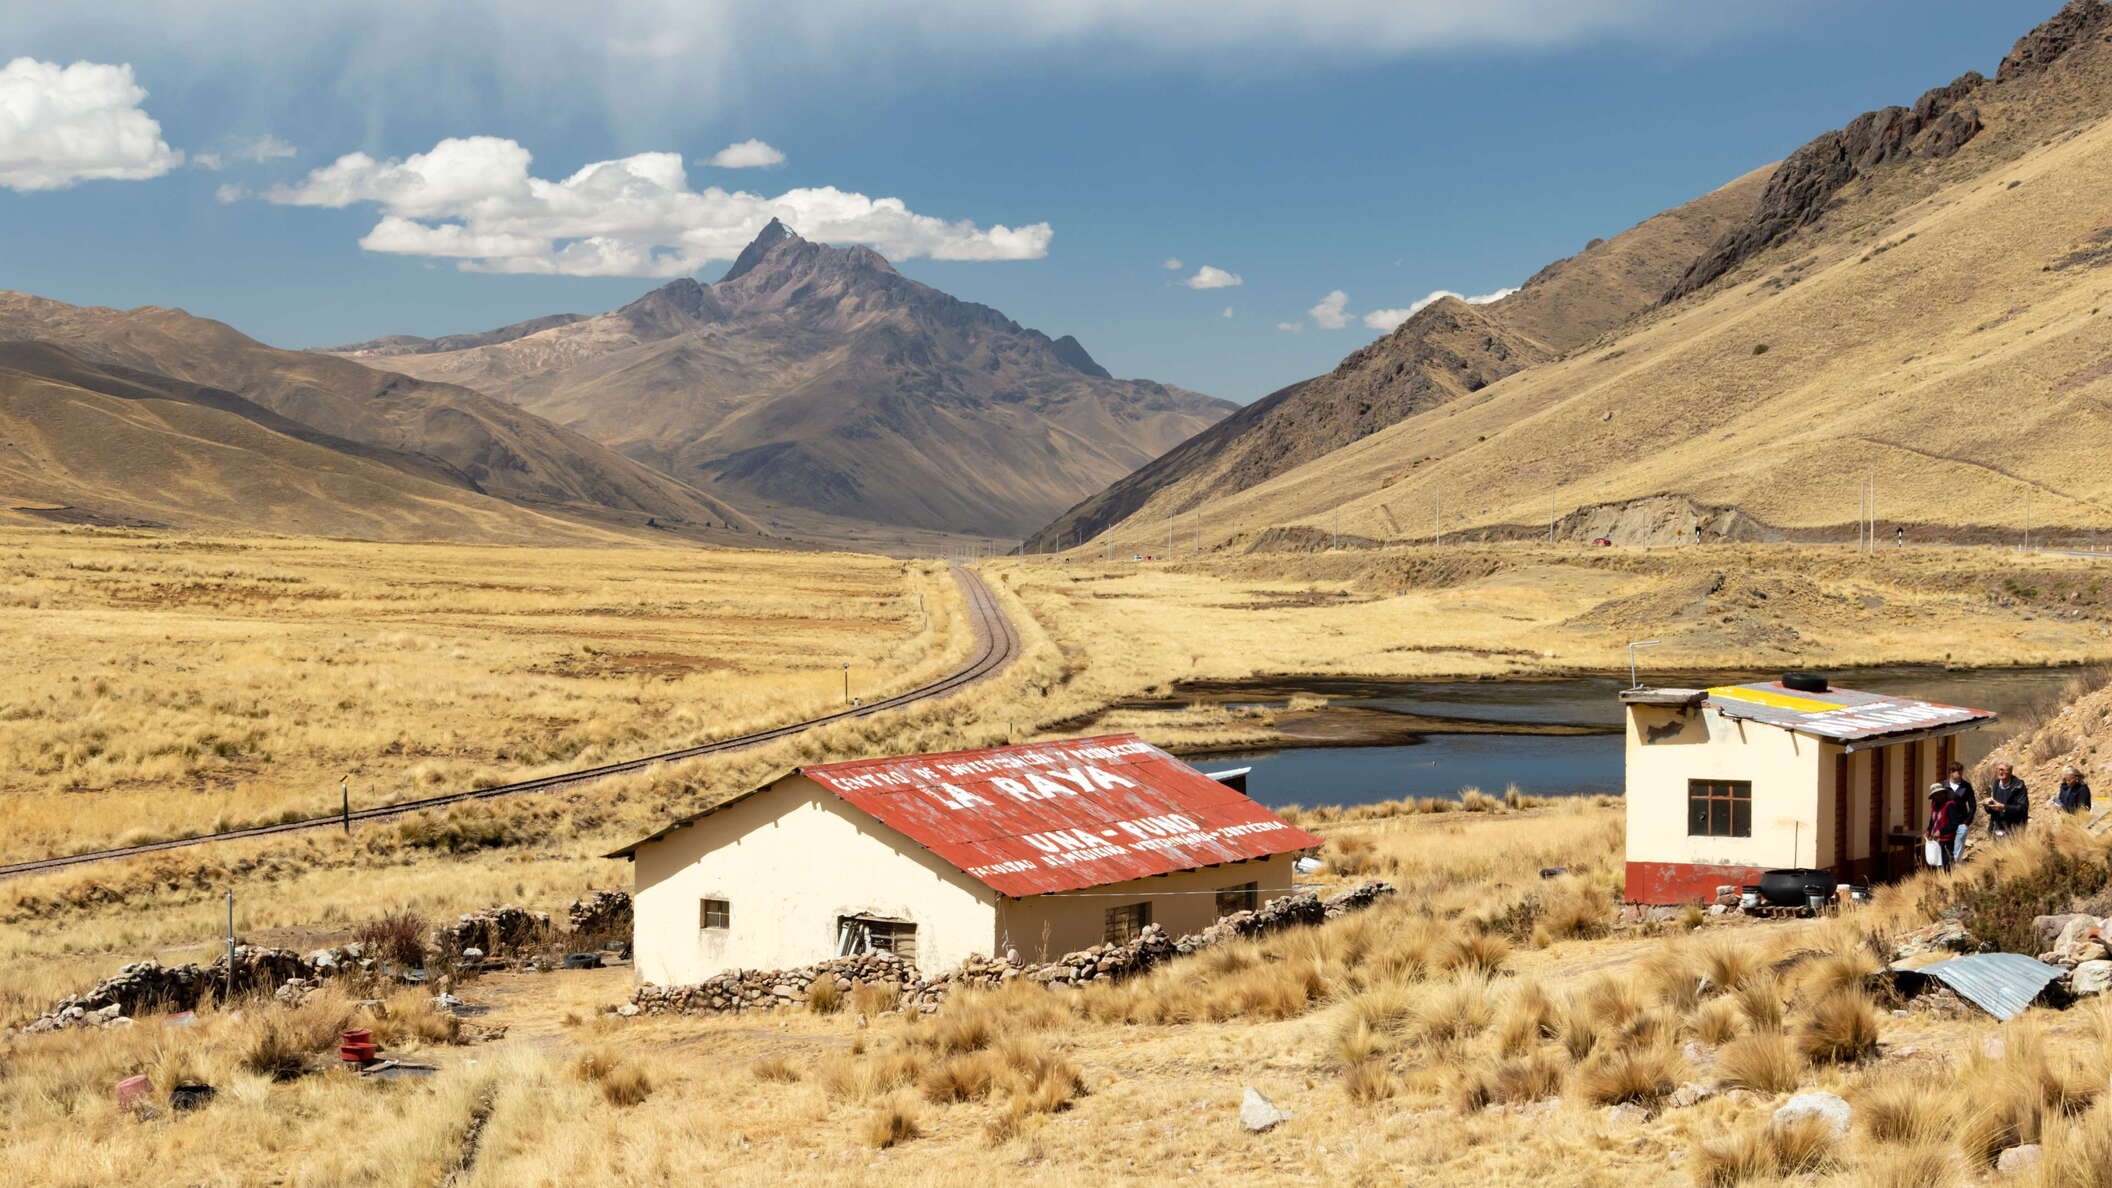 Abra La Raya with Cusco-Puno railway line